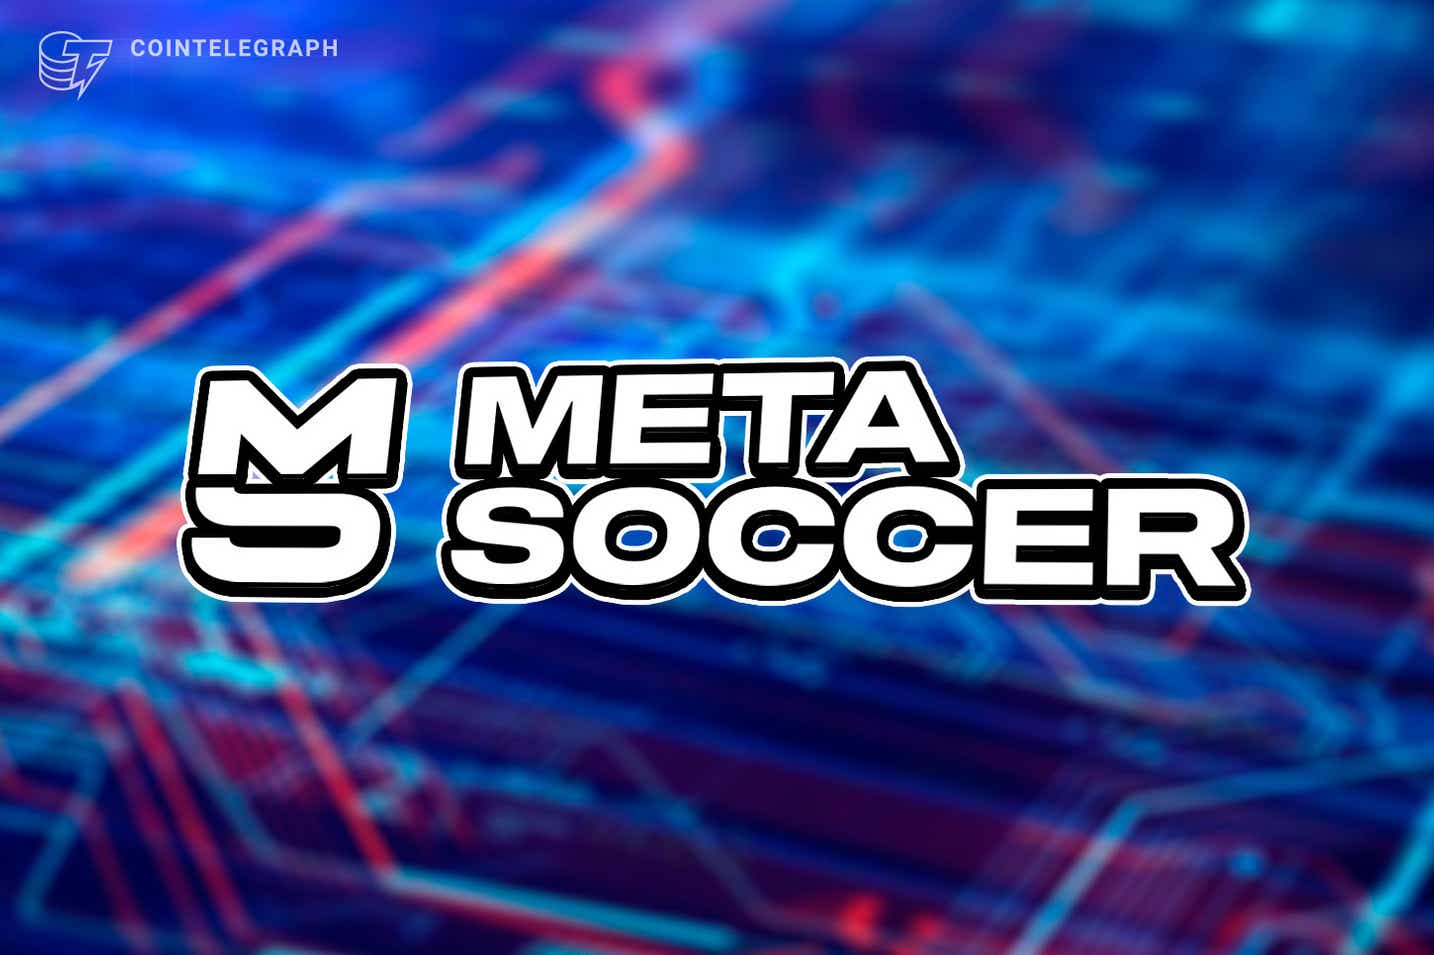 Trò chơi bóng đá metaverse đầu tiên, MetaSoccer, ra mắt với khoản đầu tư 2,3 triệu đô la